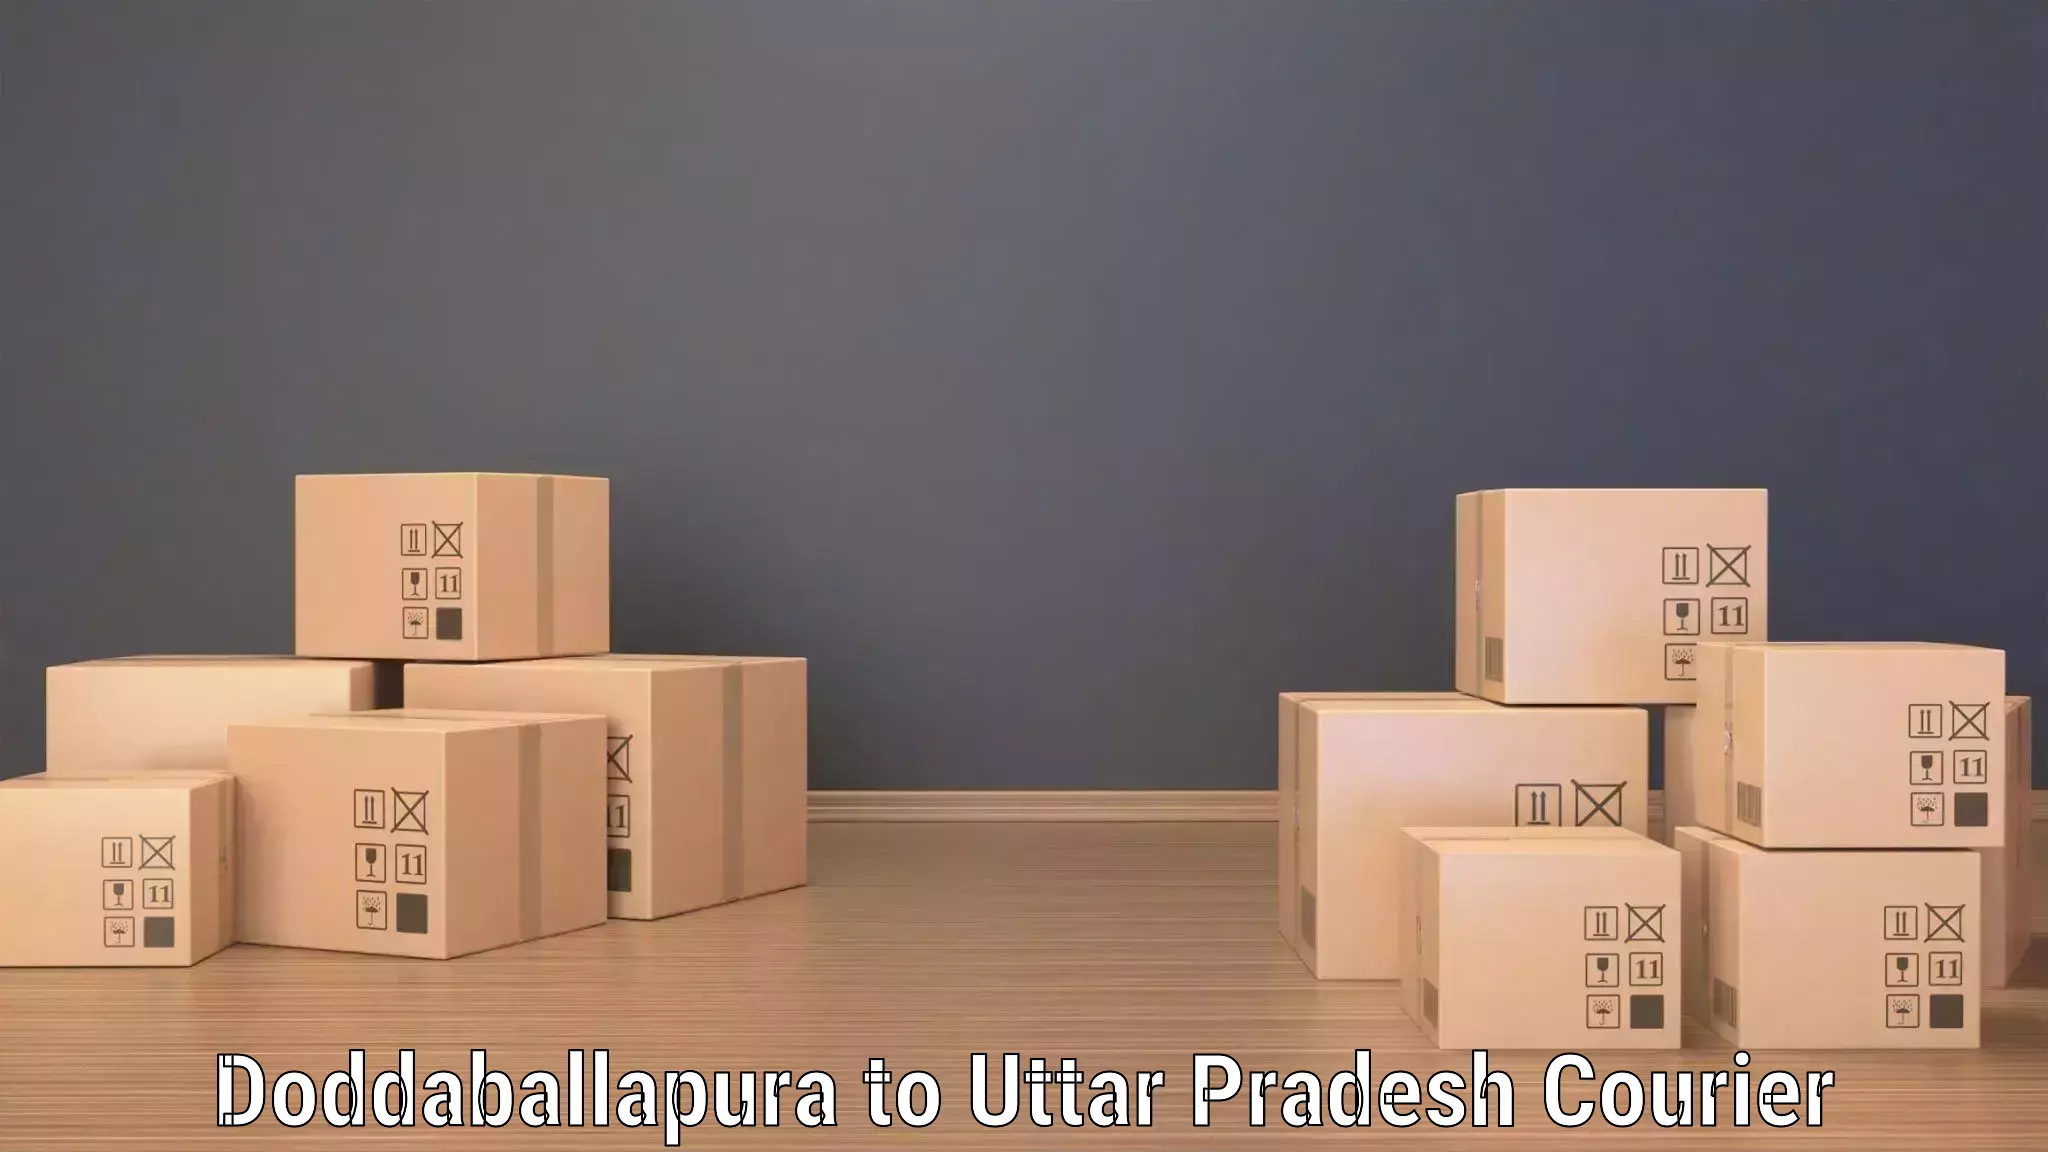 Comprehensive parcel tracking in Doddaballapura to Jalesar